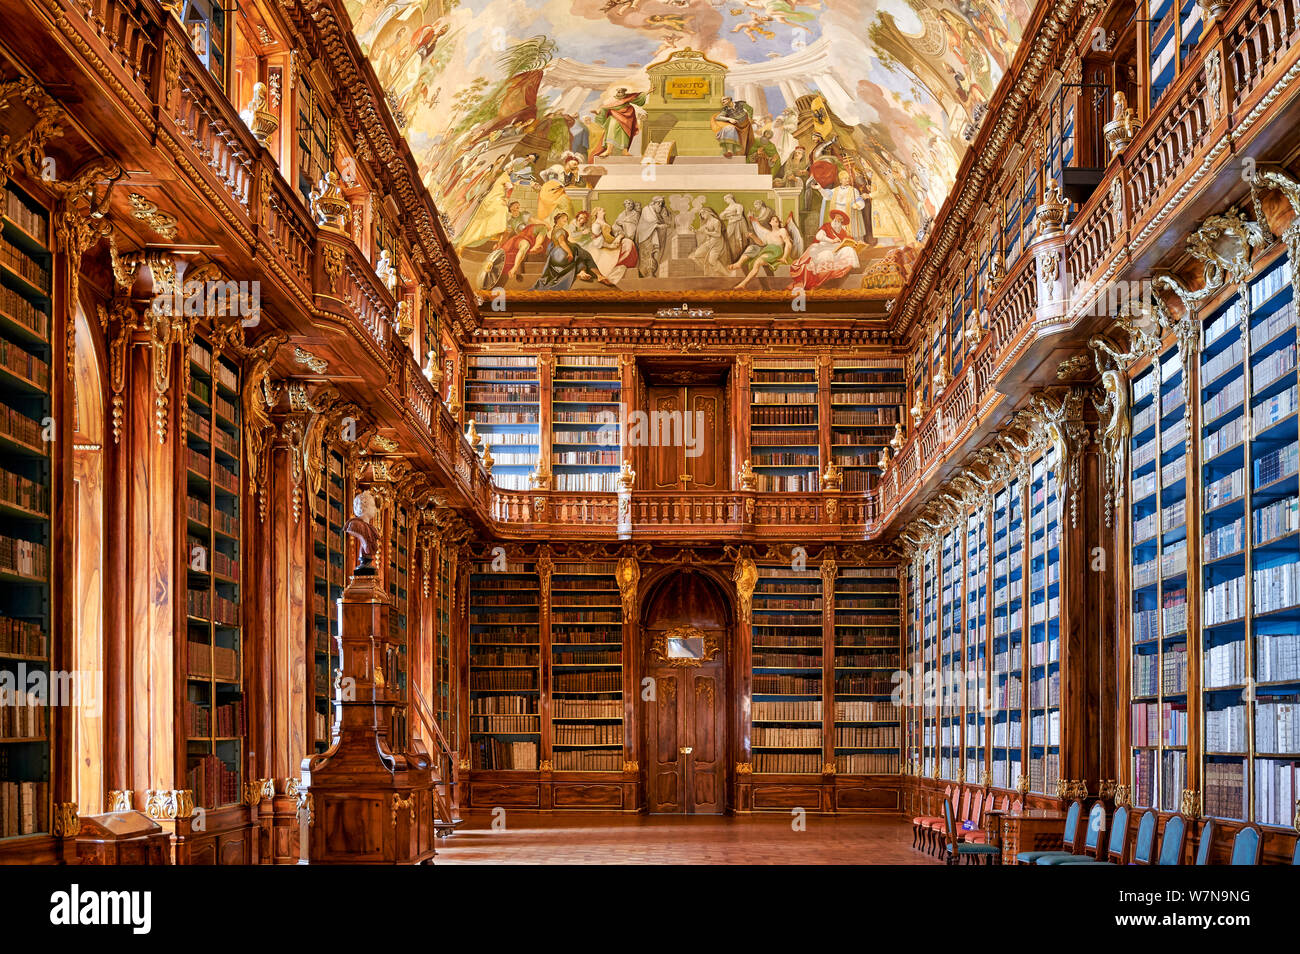 Praga, República Checa. La antigua biblioteca en el monasterio de Strahov Foto de stock